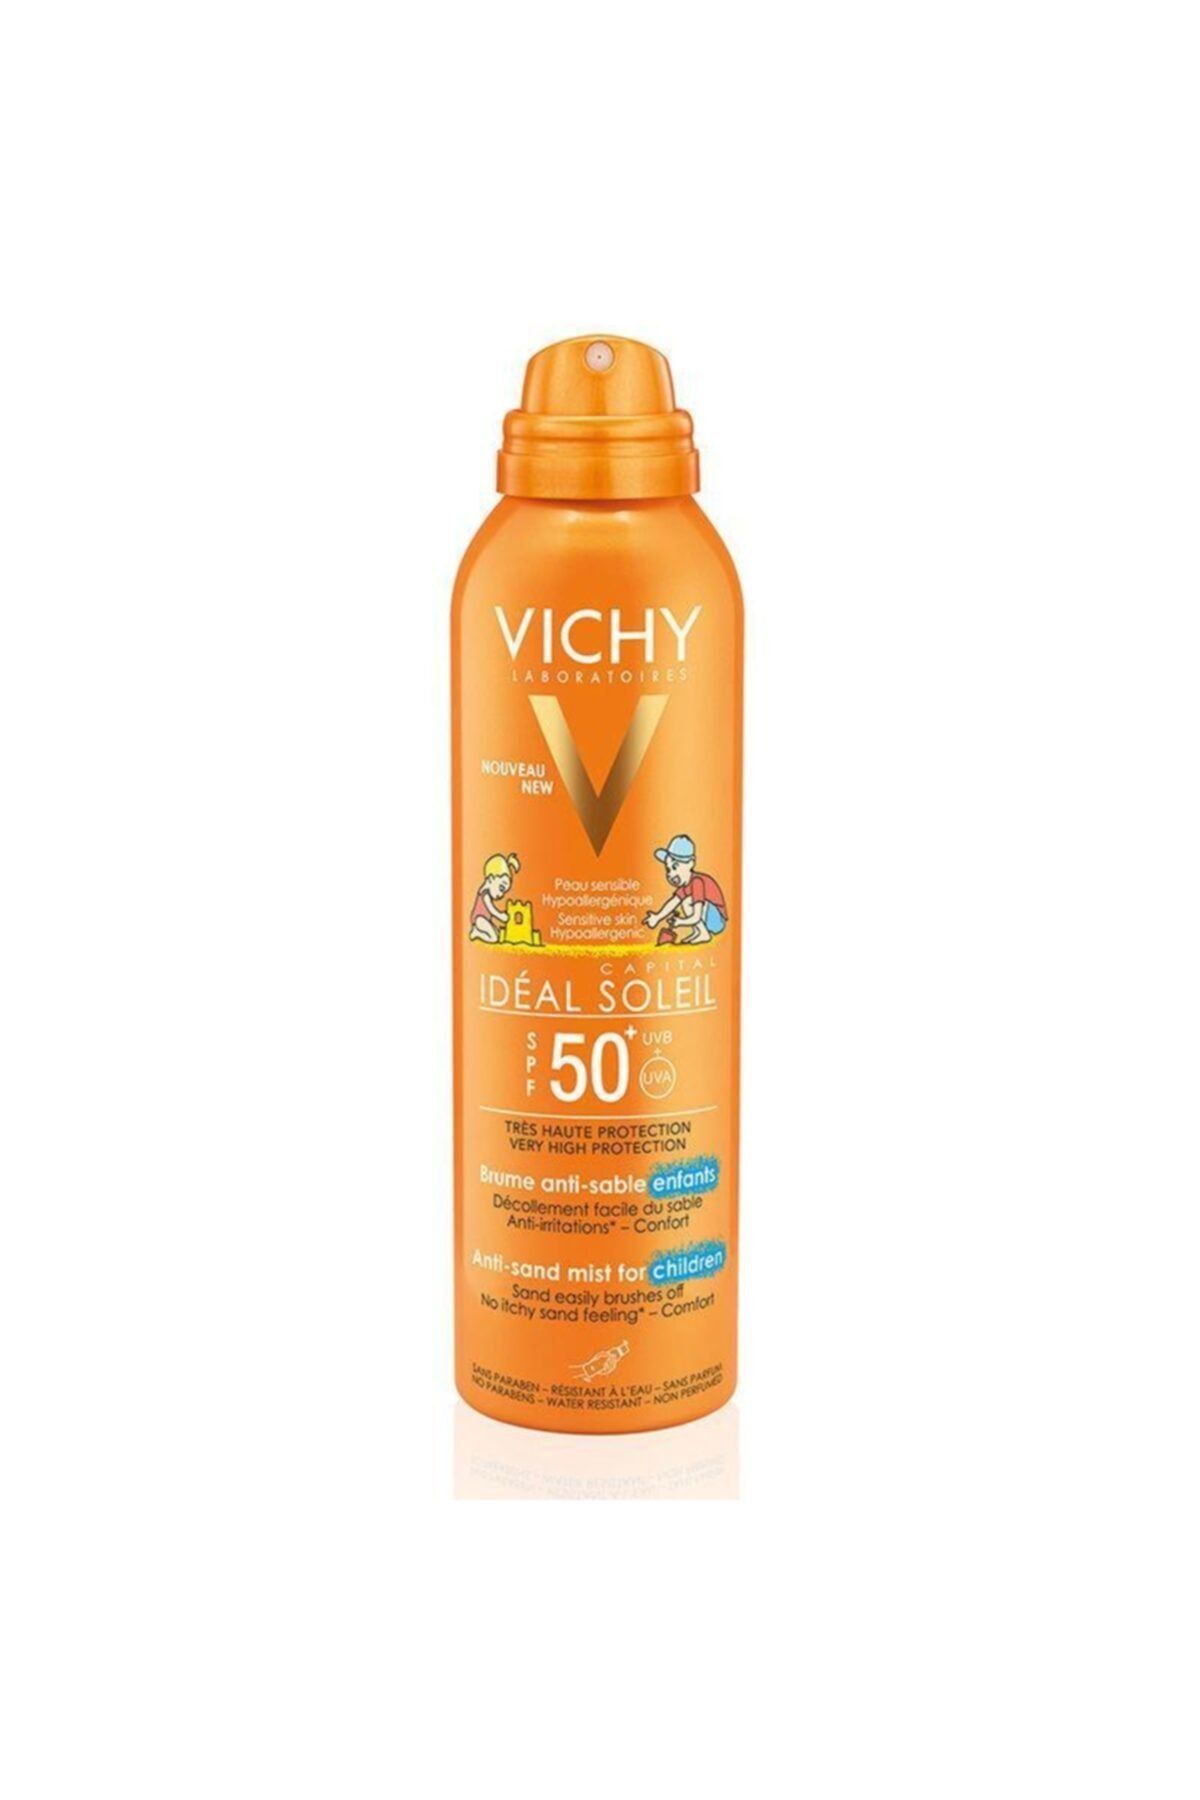 Vichy Capital Ideal Soleil Çocuklar için Kum Yapışmalarına Karşı Sprey SPF50 200 ml